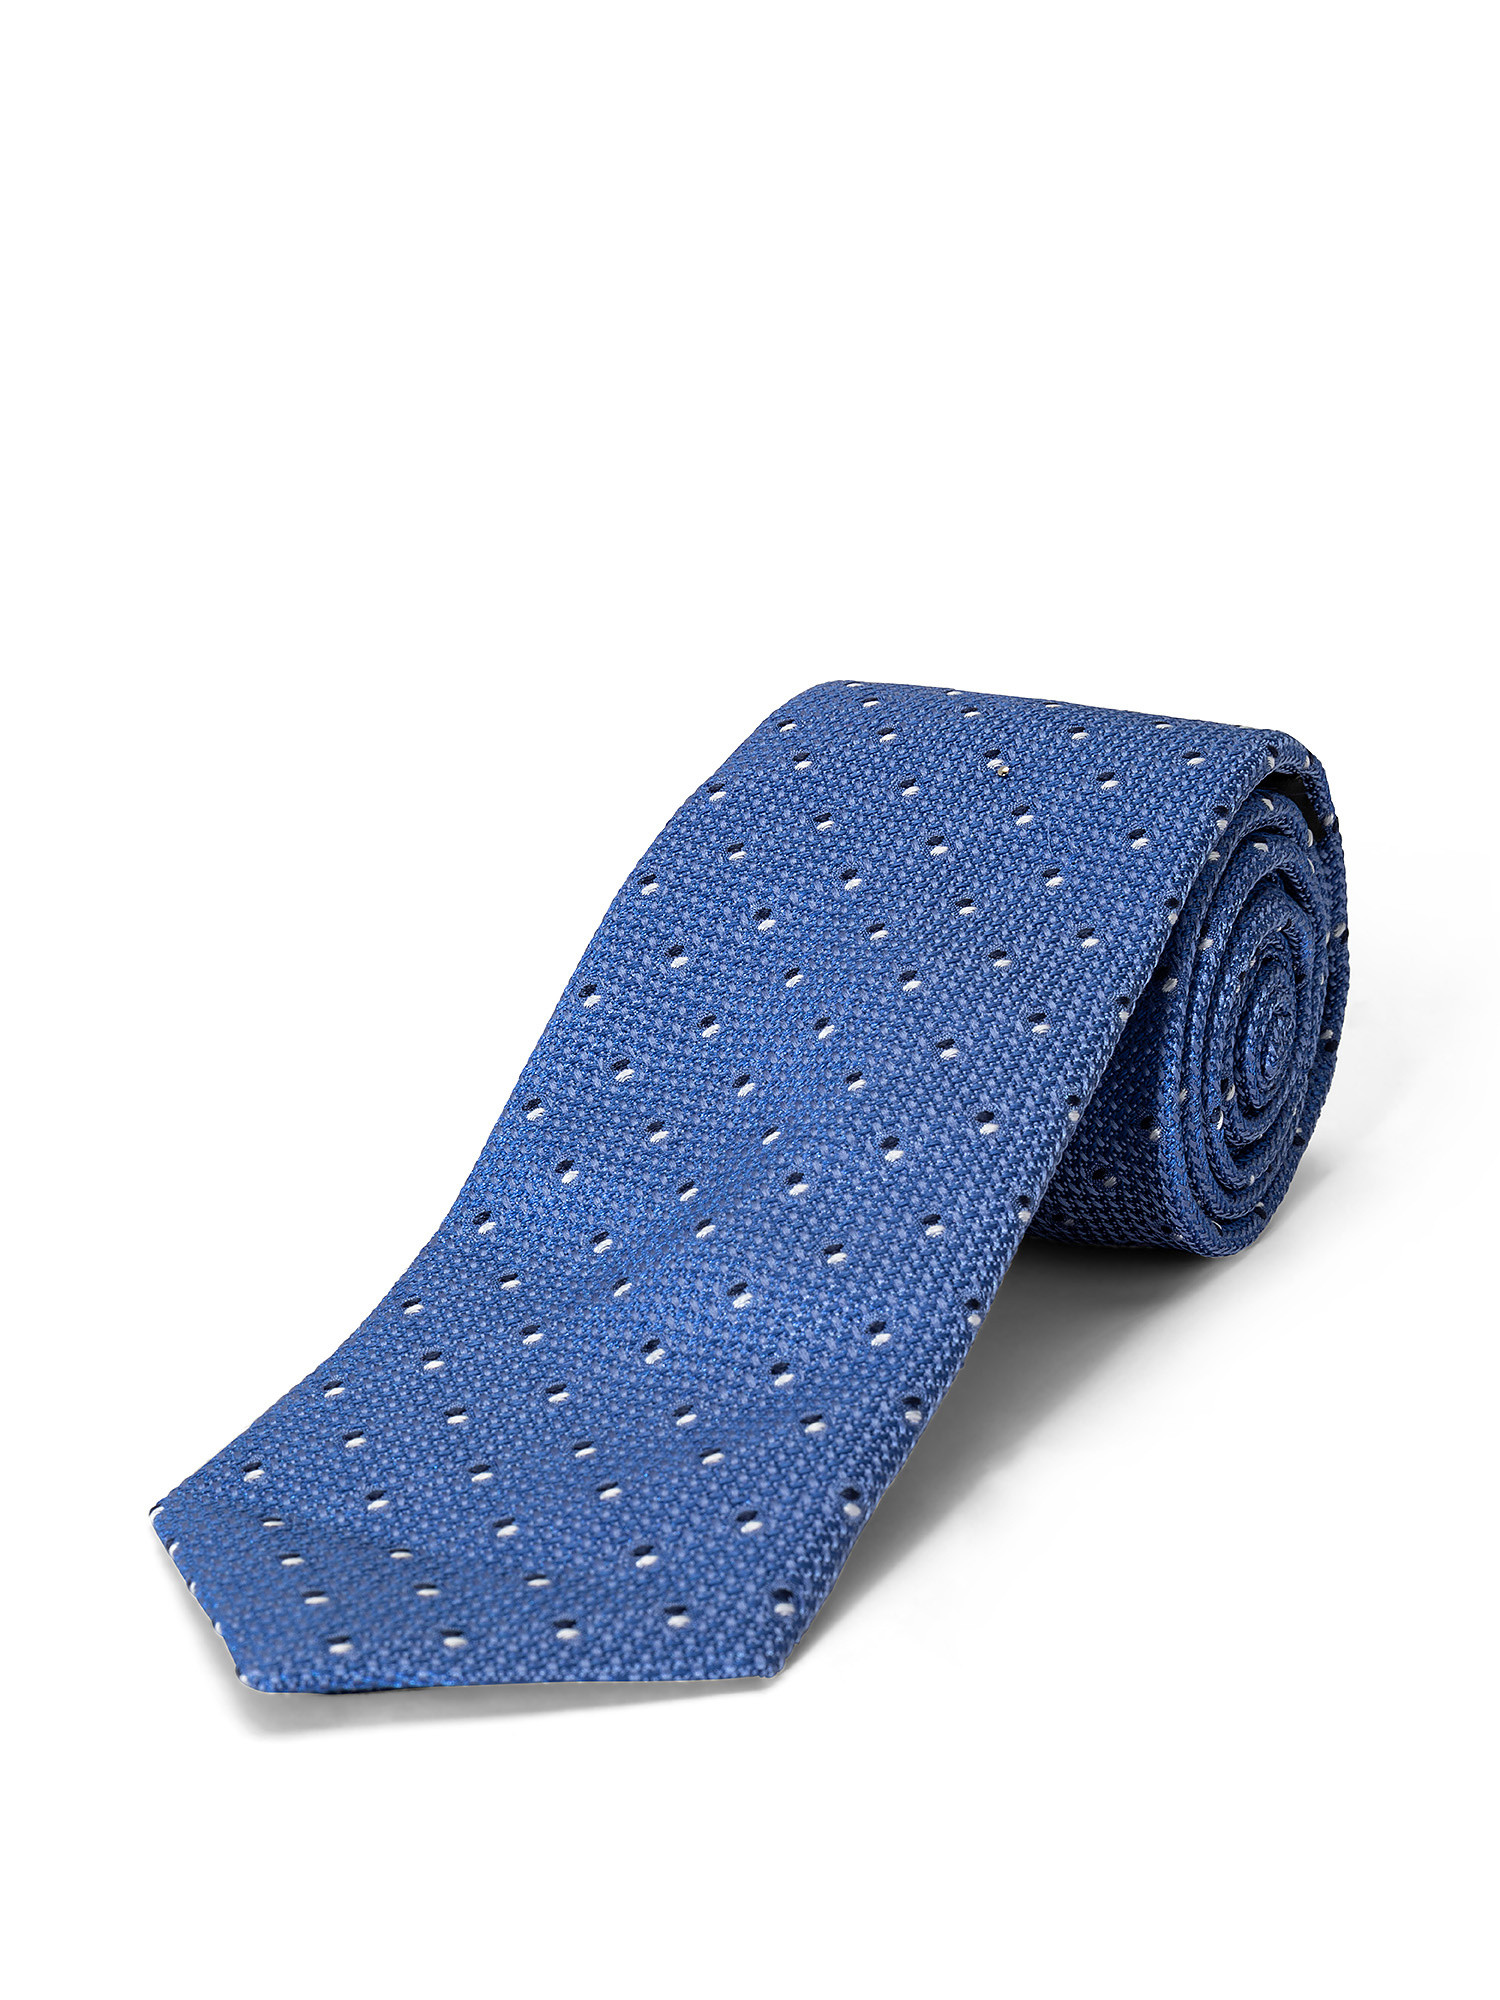 Cravatta in pura seta fantasia, Azzurro celeste, large image number 1